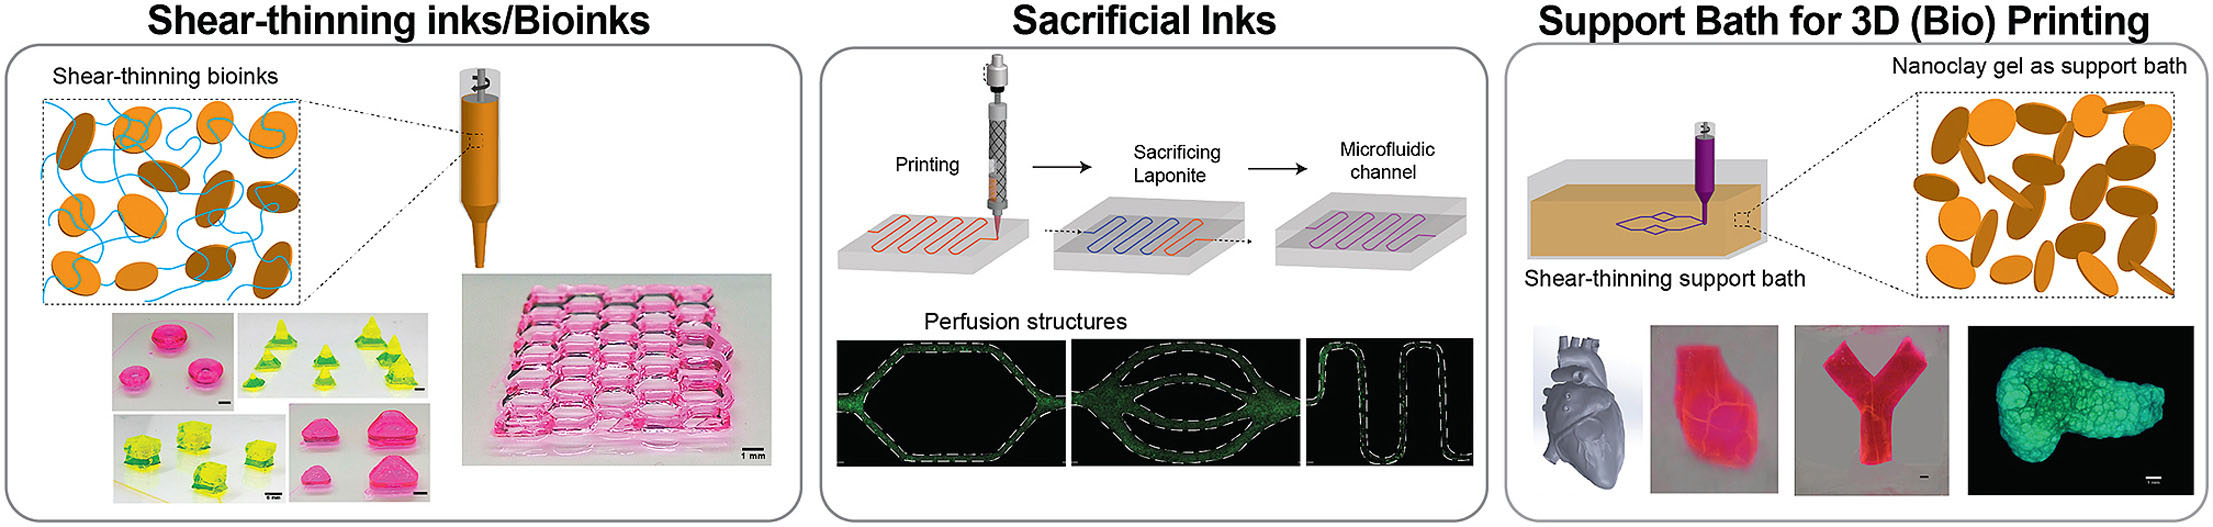 soluciones coloidales de nanosilicatos 2D como plataforma tecnológica para la impresión de estructuras complejas mediante bioimpresión 3D